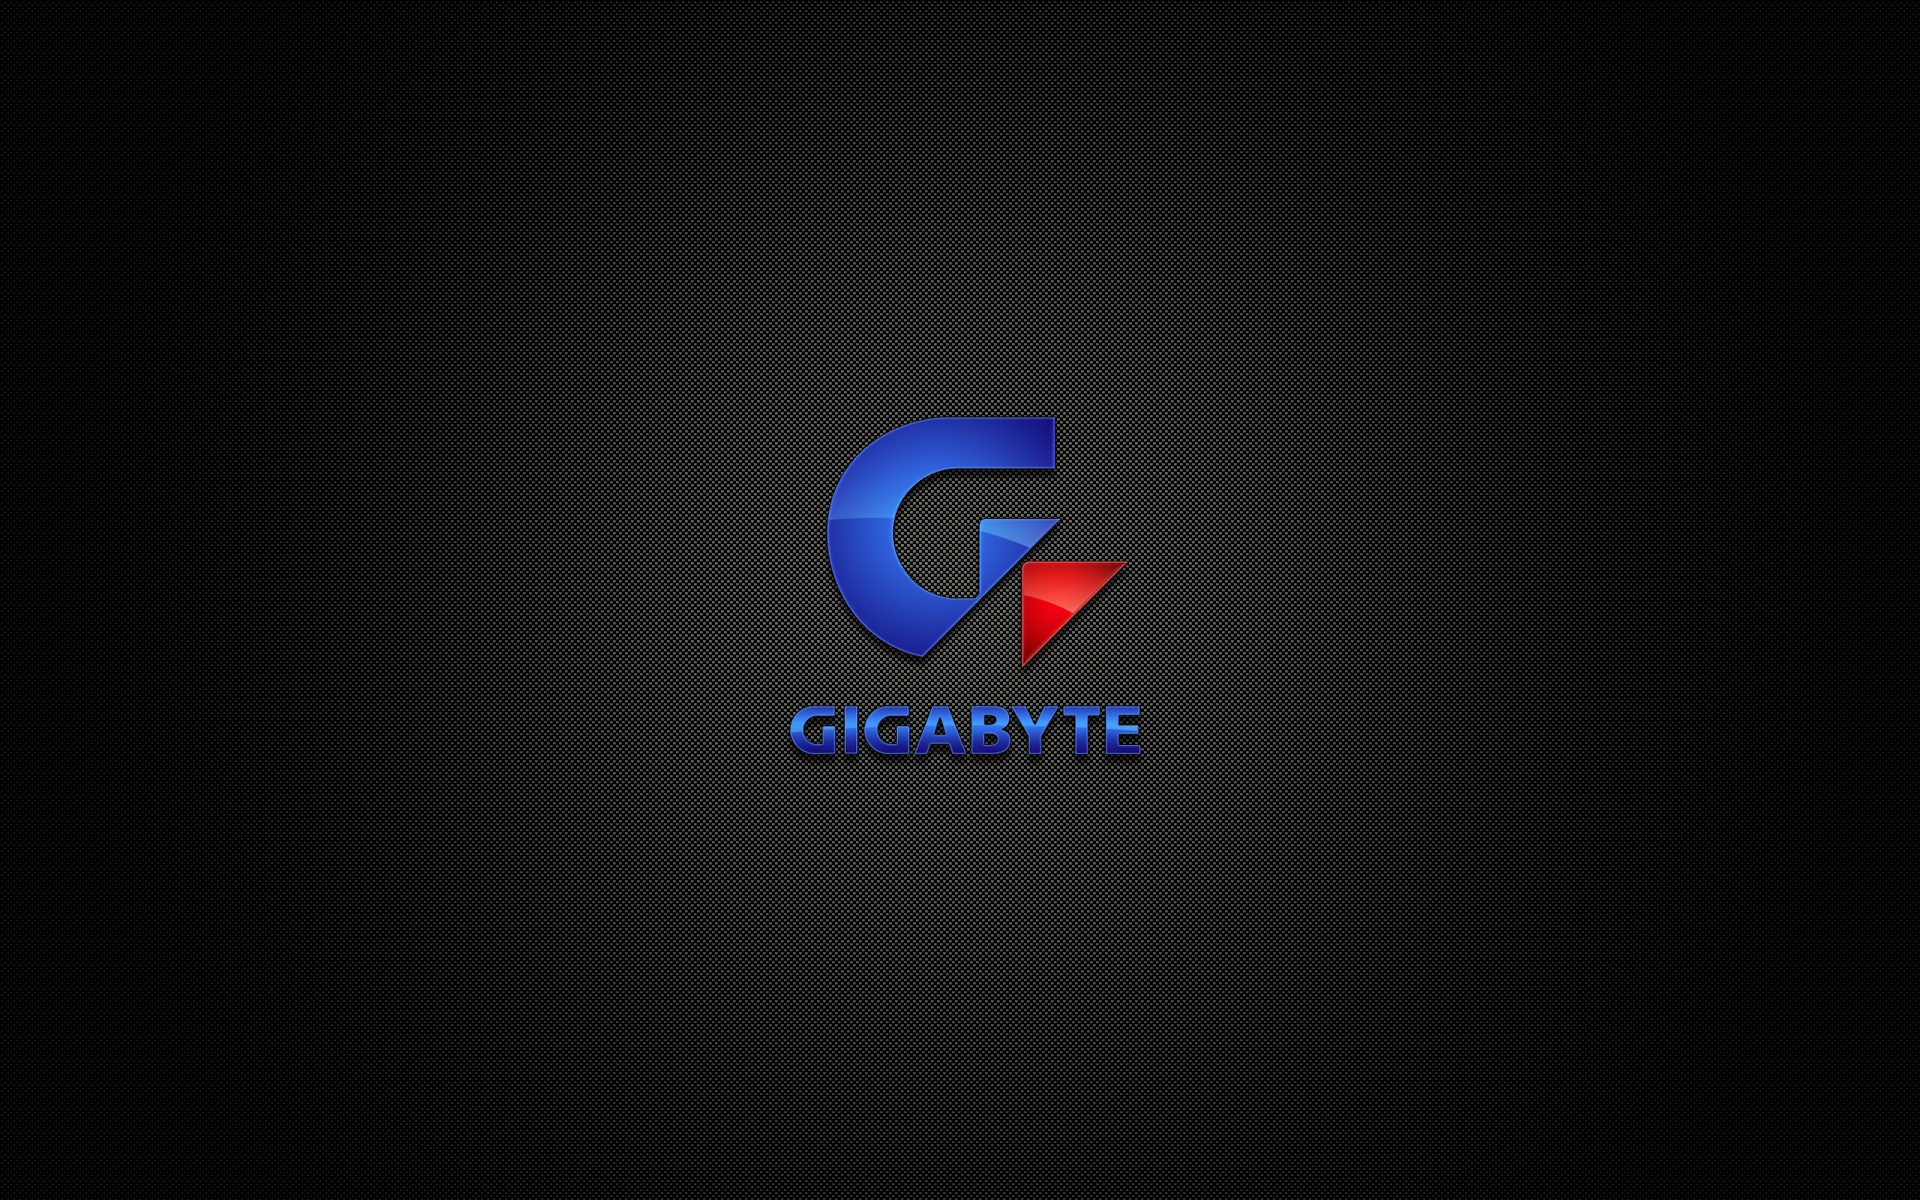 gigabyte_by_mullet-d3eq4en.jpg